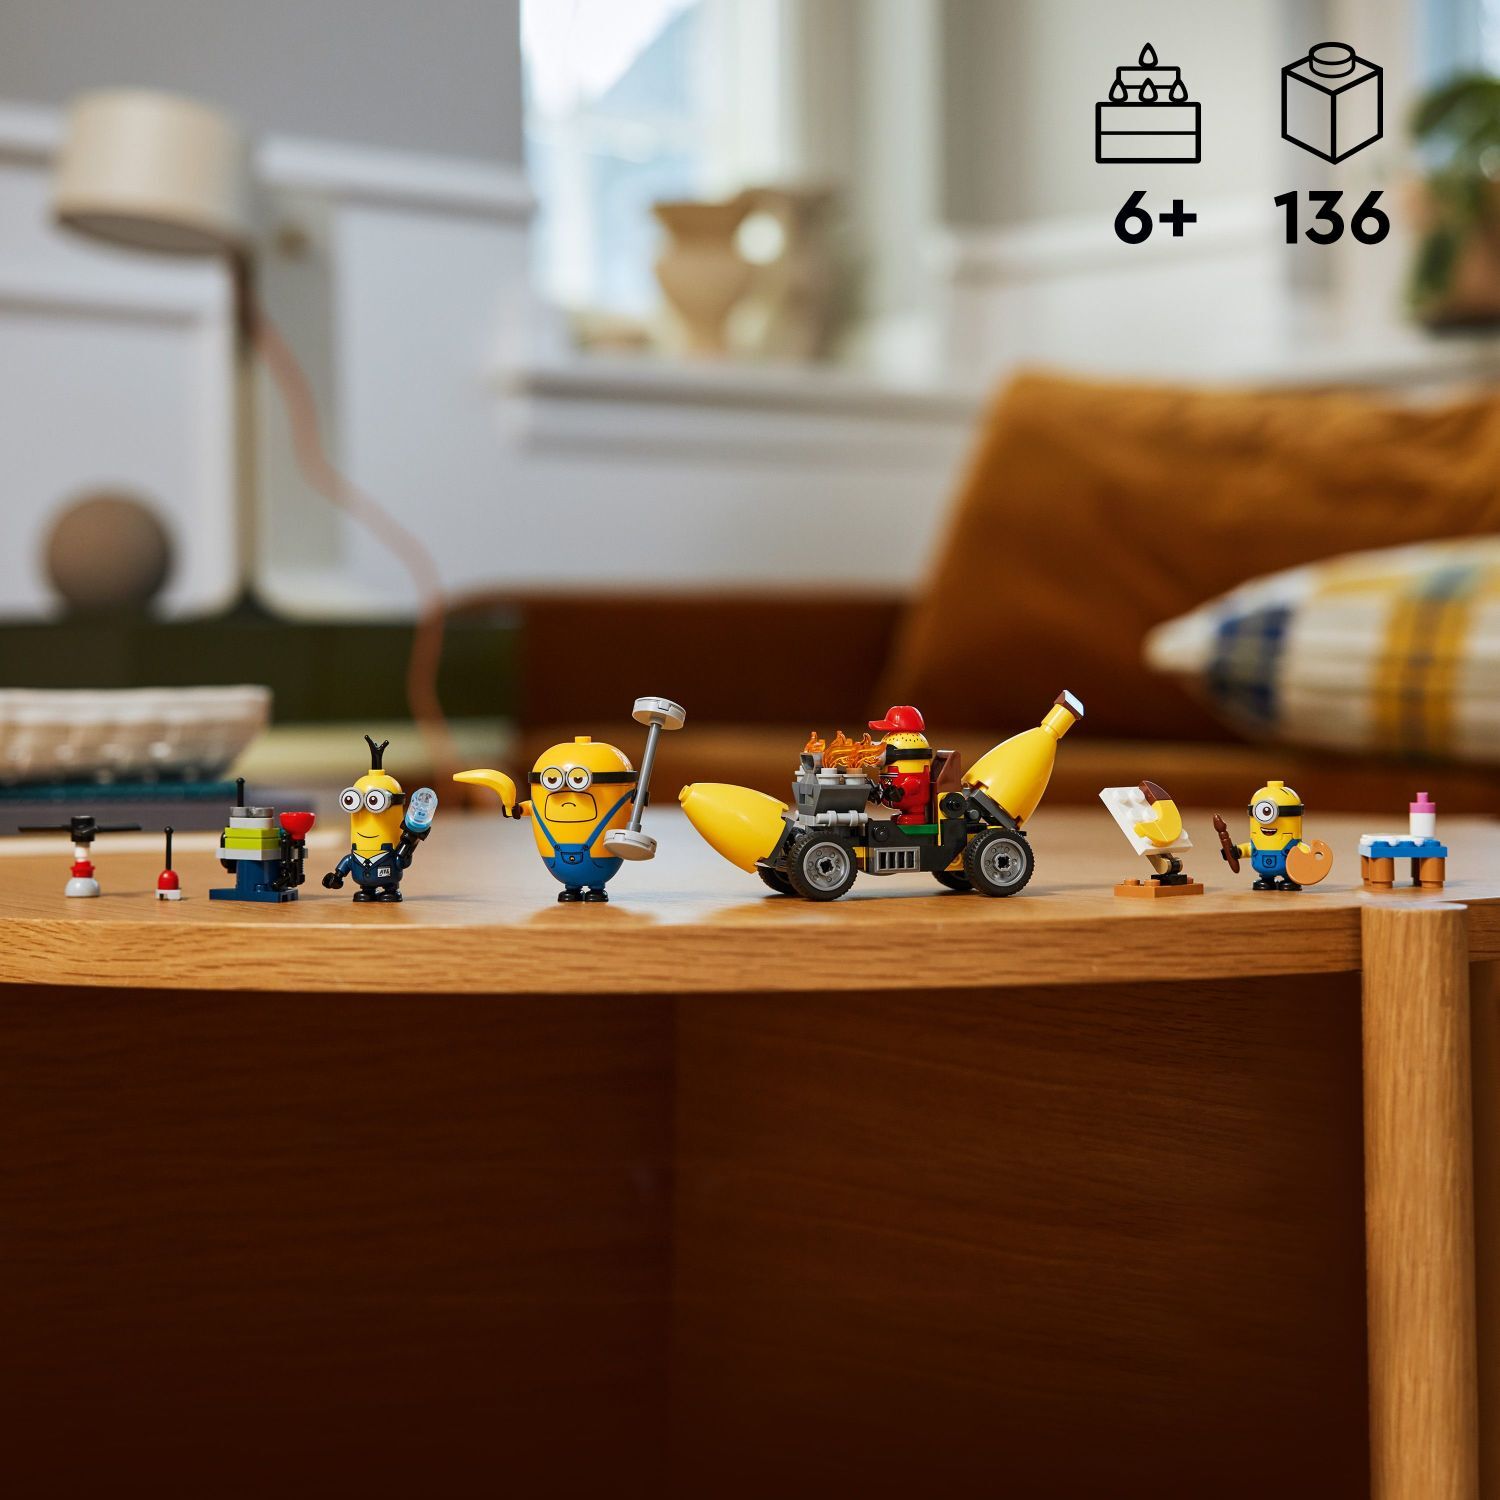 LEGO® Despicable Me: Minions and Banana Car